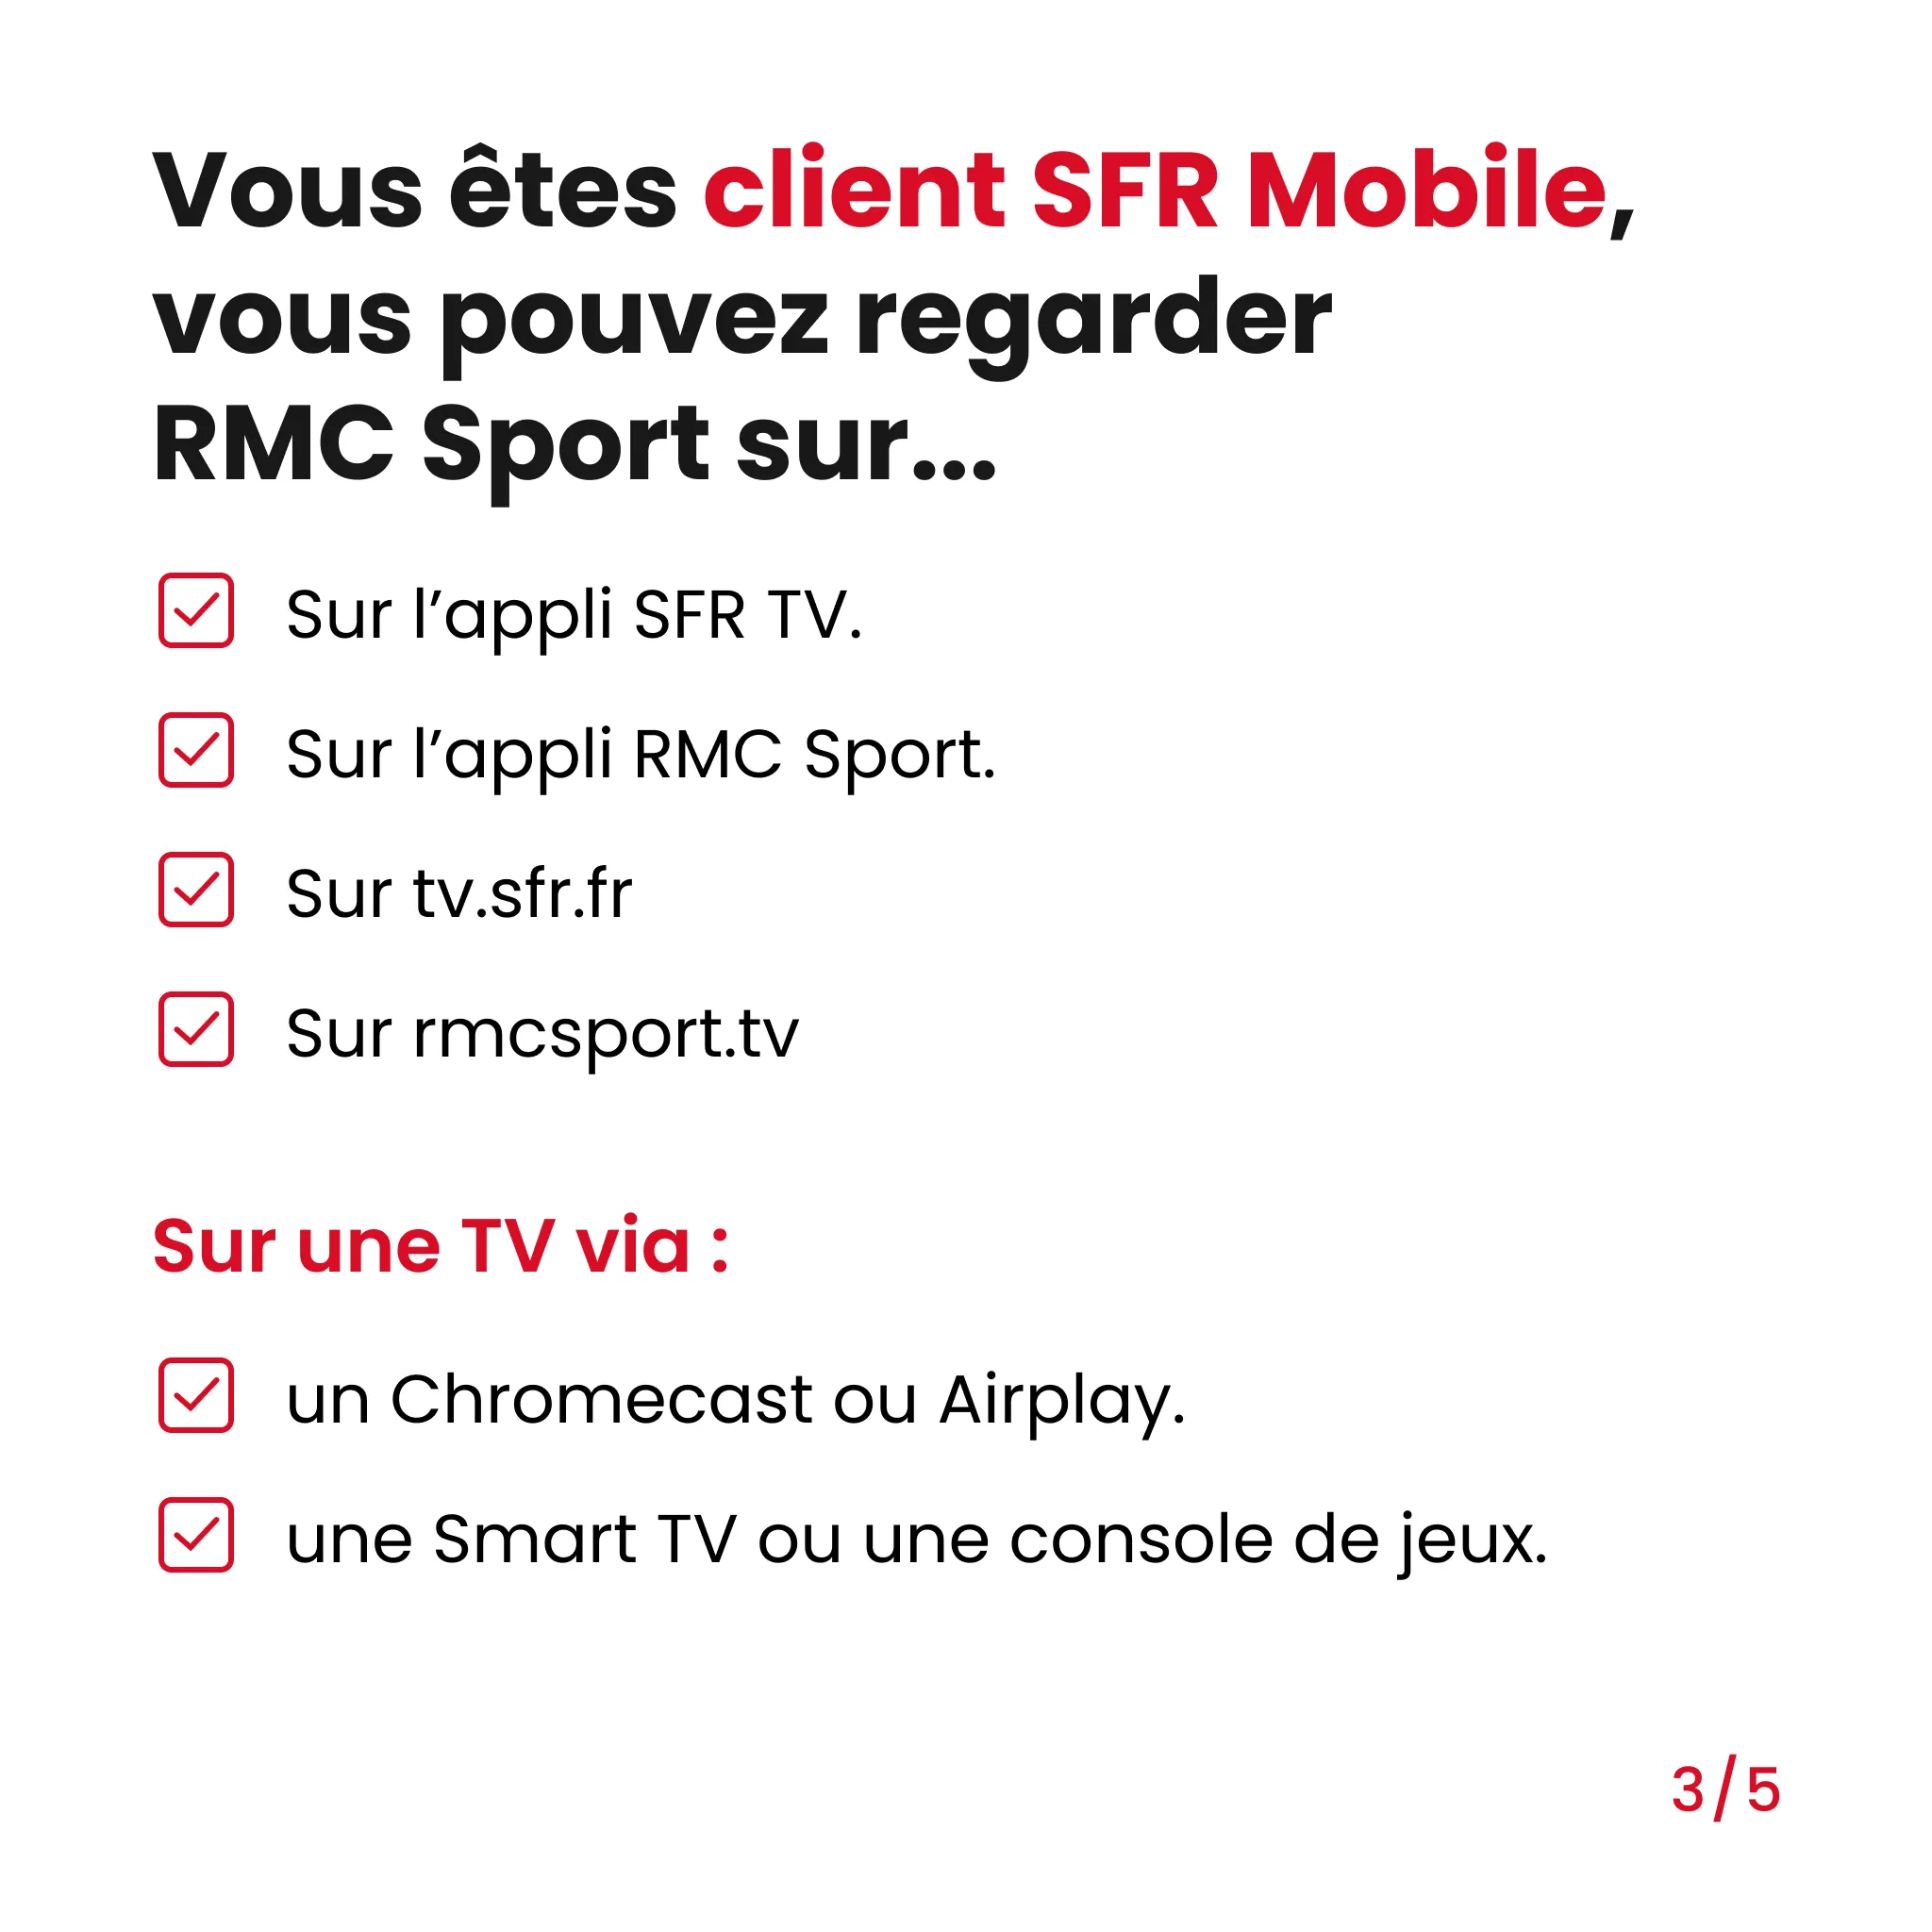 liste sur laquelle vous pouvez regarder RMC Sport si vous etes client SFR Mobile